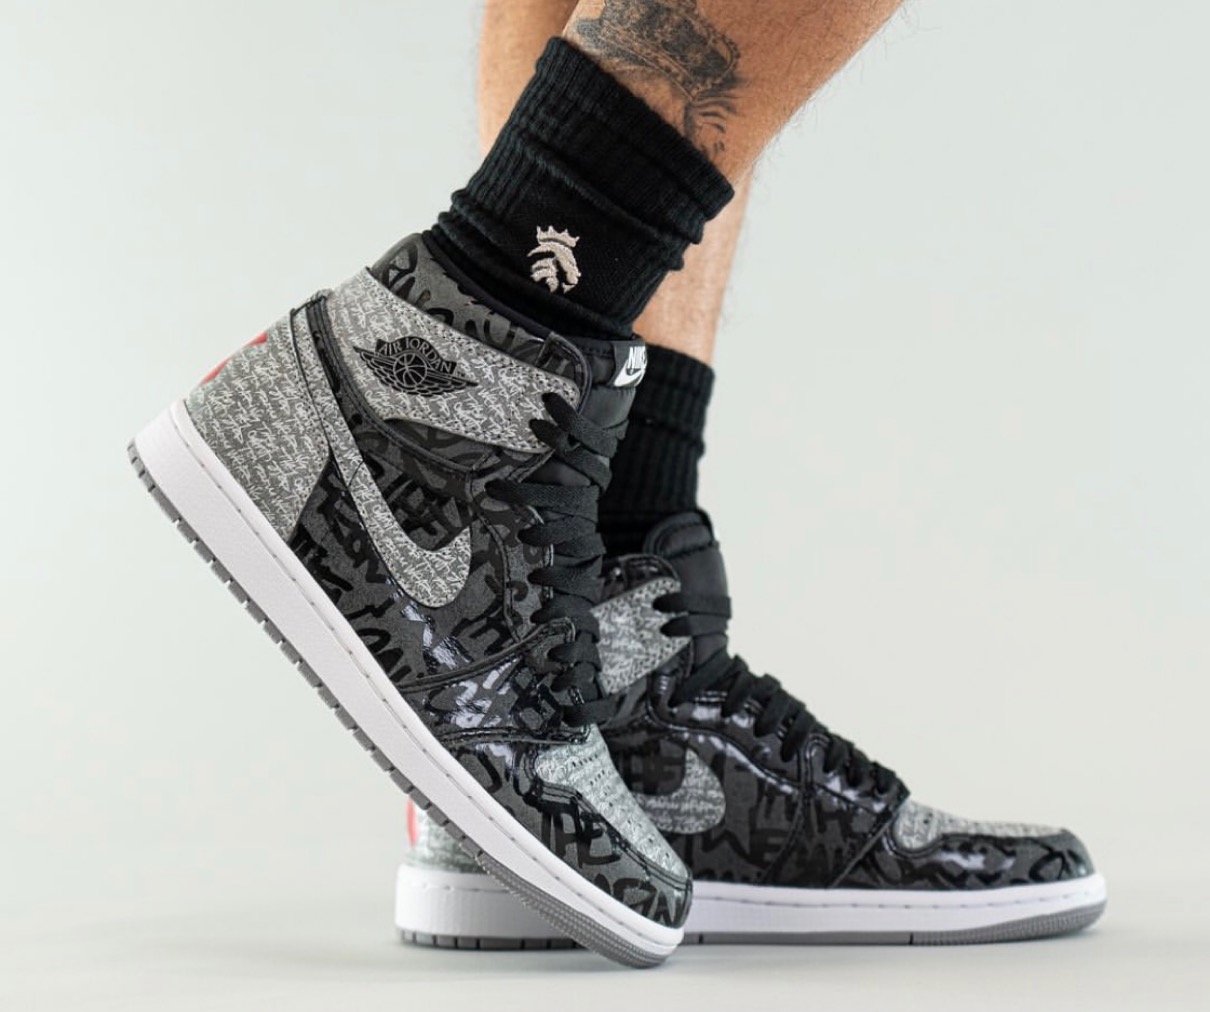 Nike】Air Jordan 1 Retro High OG “Rebellionaire”が国内3月12日に